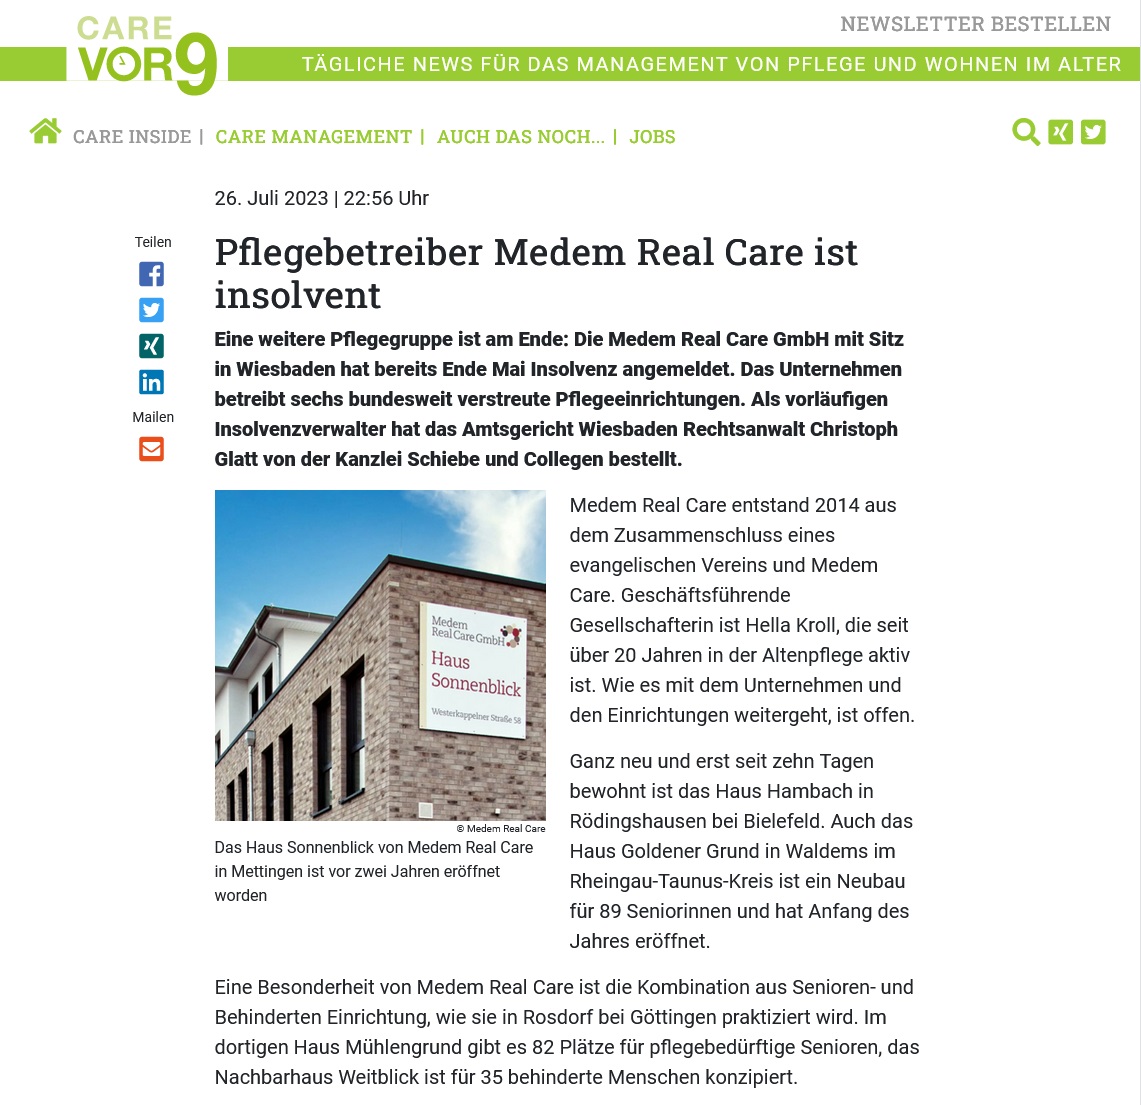 Carevor9.de: Pflegebetreiber Medem Real Care Ist Insolvent